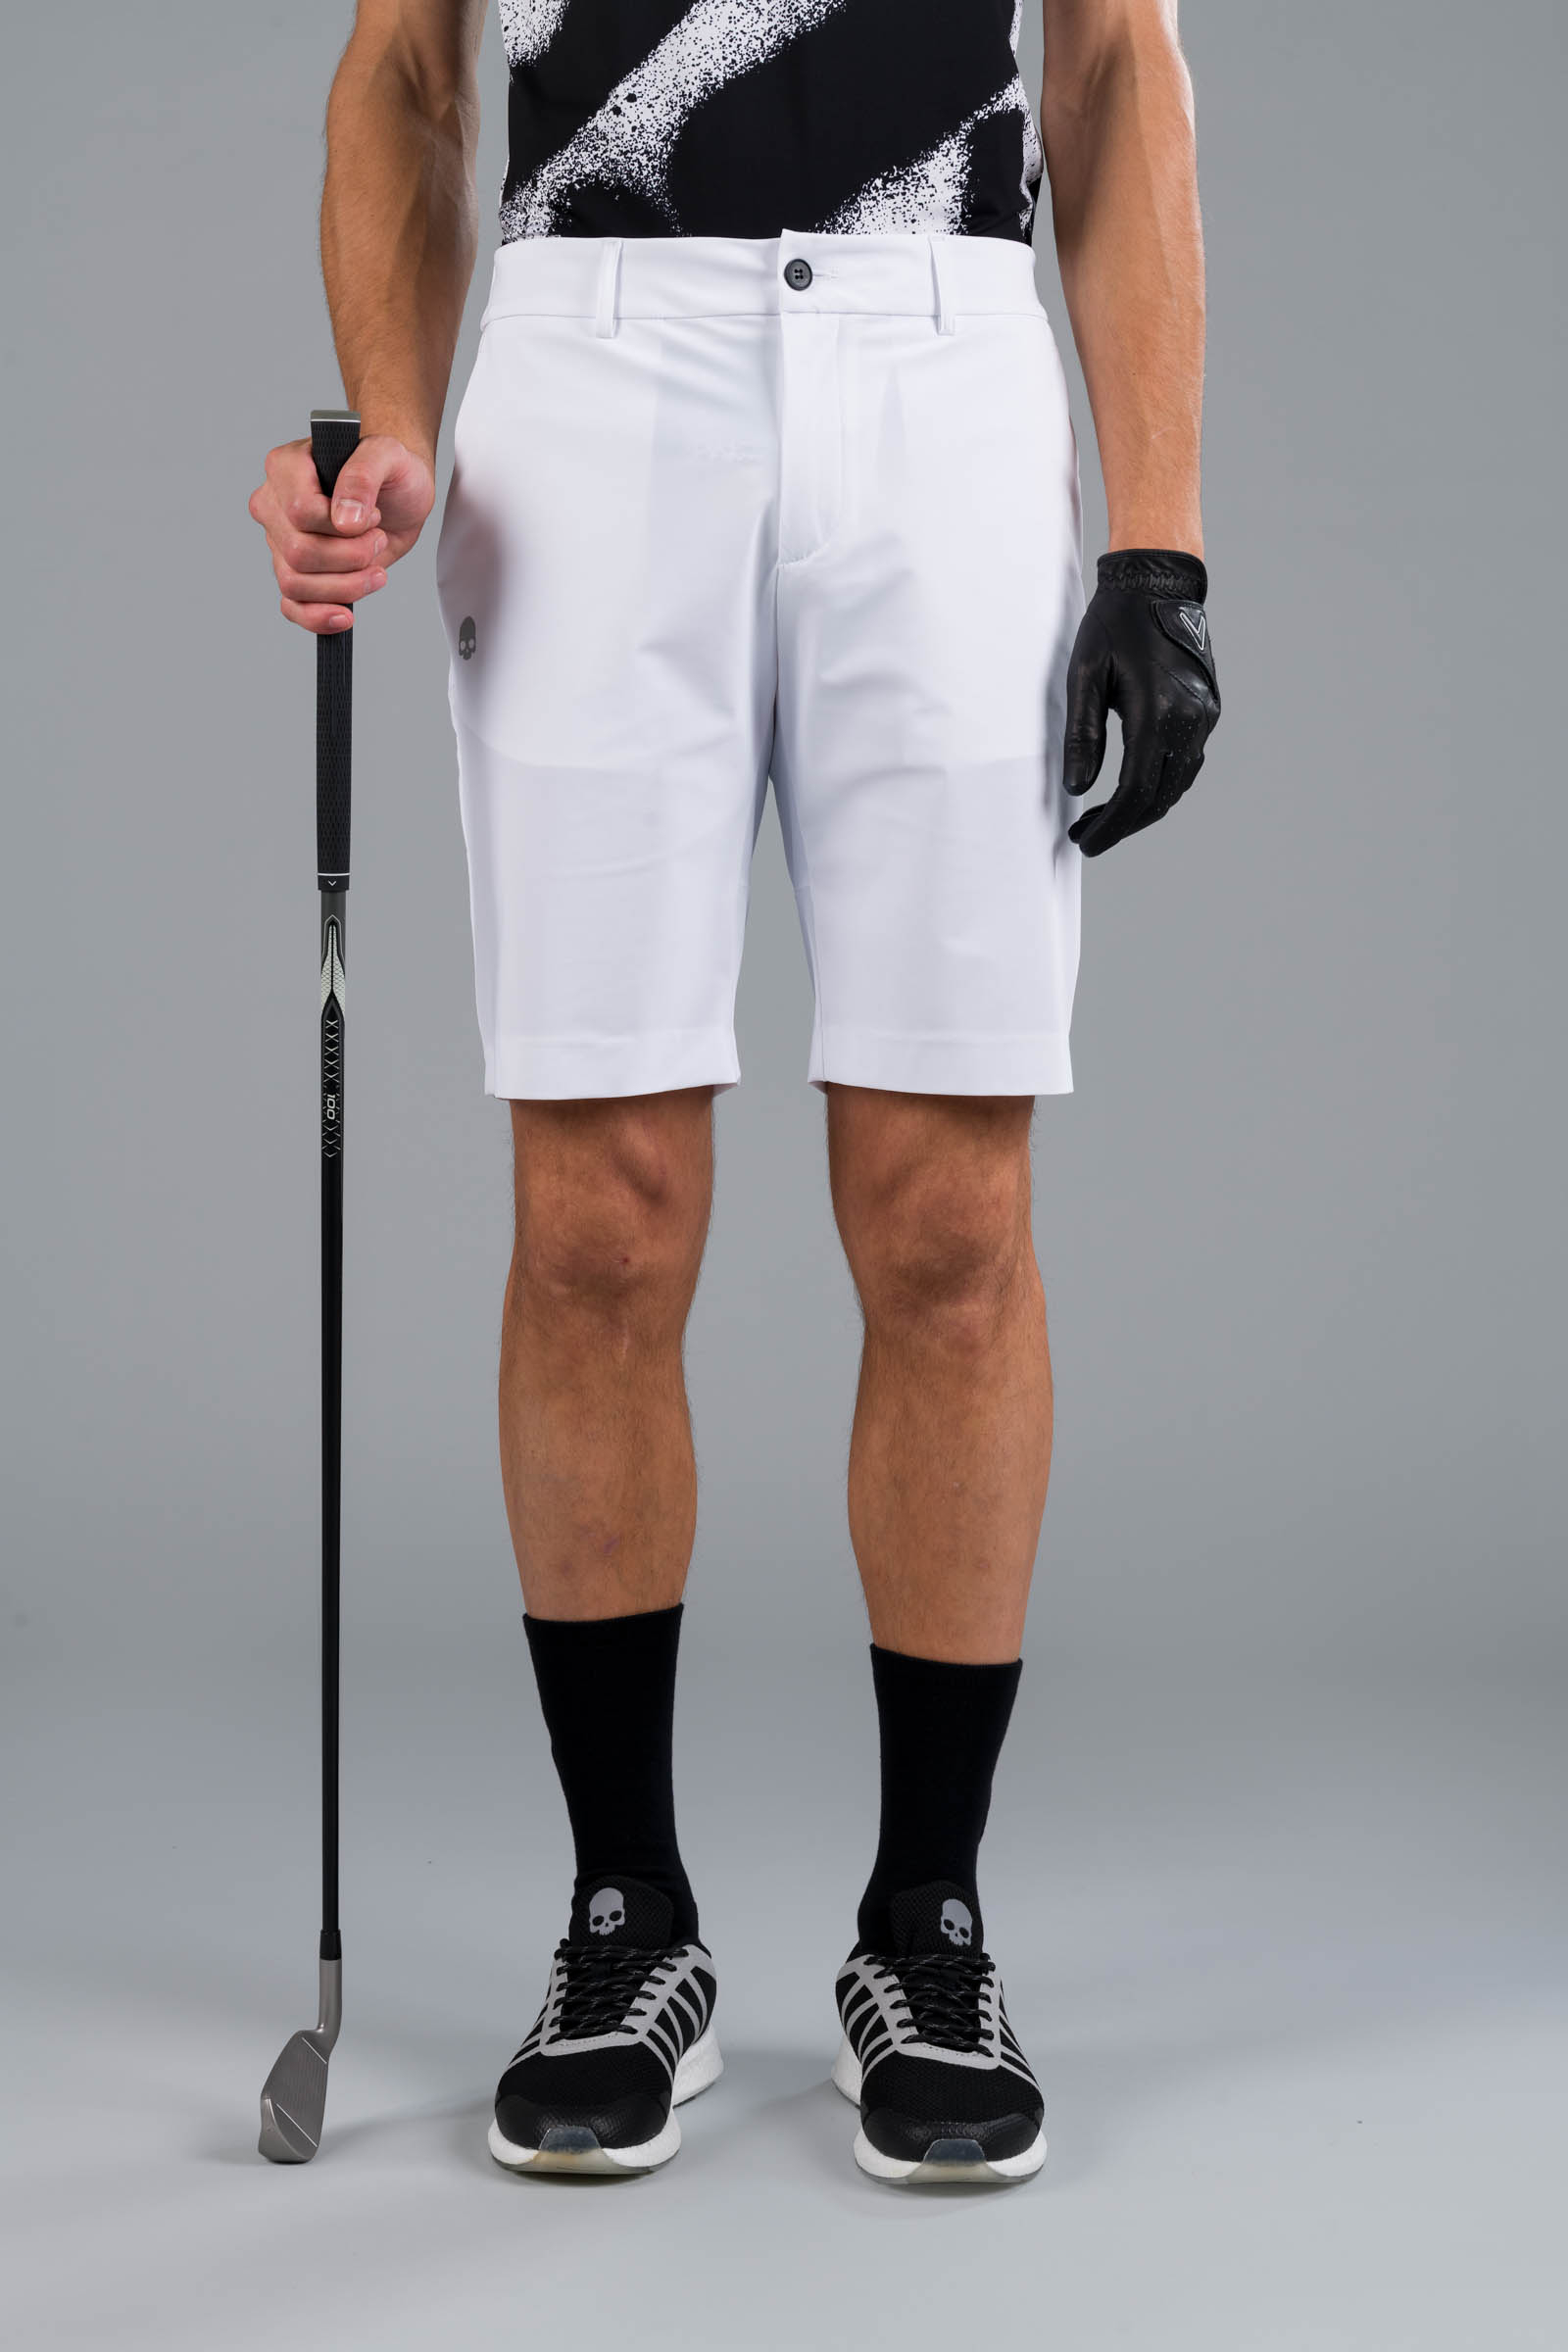 GOLF SHORTS - Abbigliamento - Outlet Hydrogen - Abbigliamento sportivo